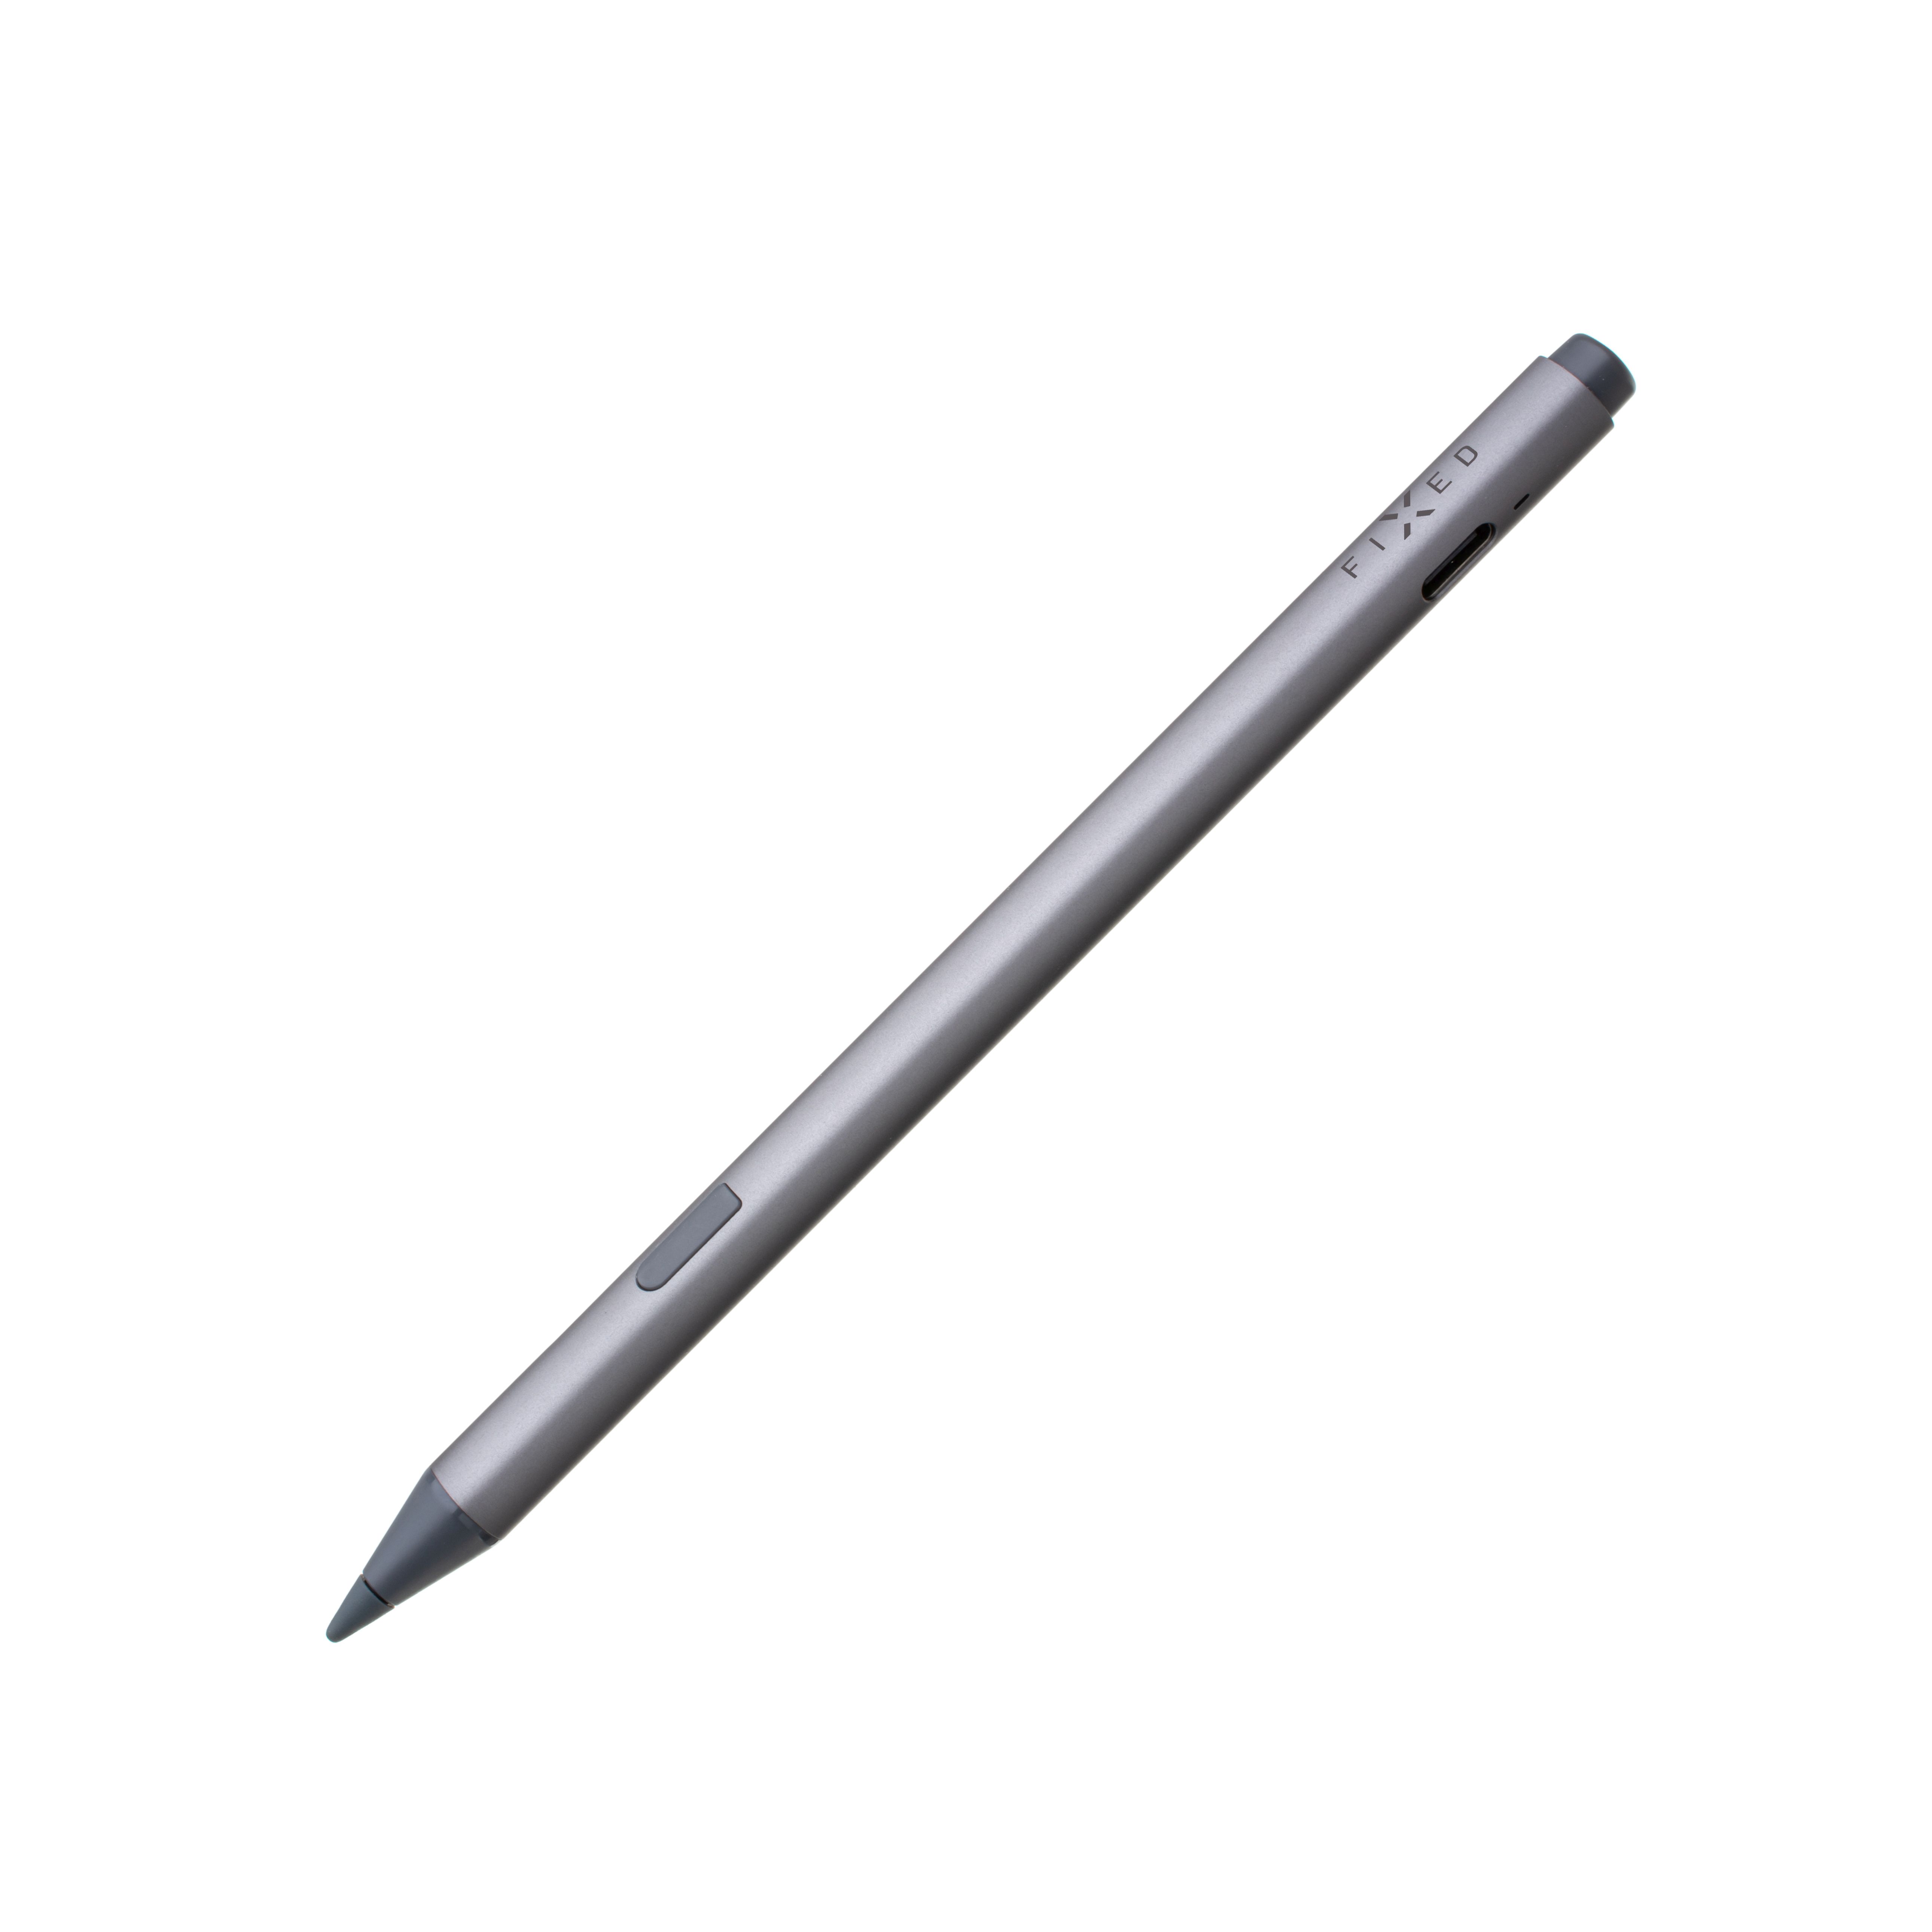 Dotykové pero pro Microsoft Surface Graphite s rozpoznání přítlaku a magnety, šedý,rozbaleno